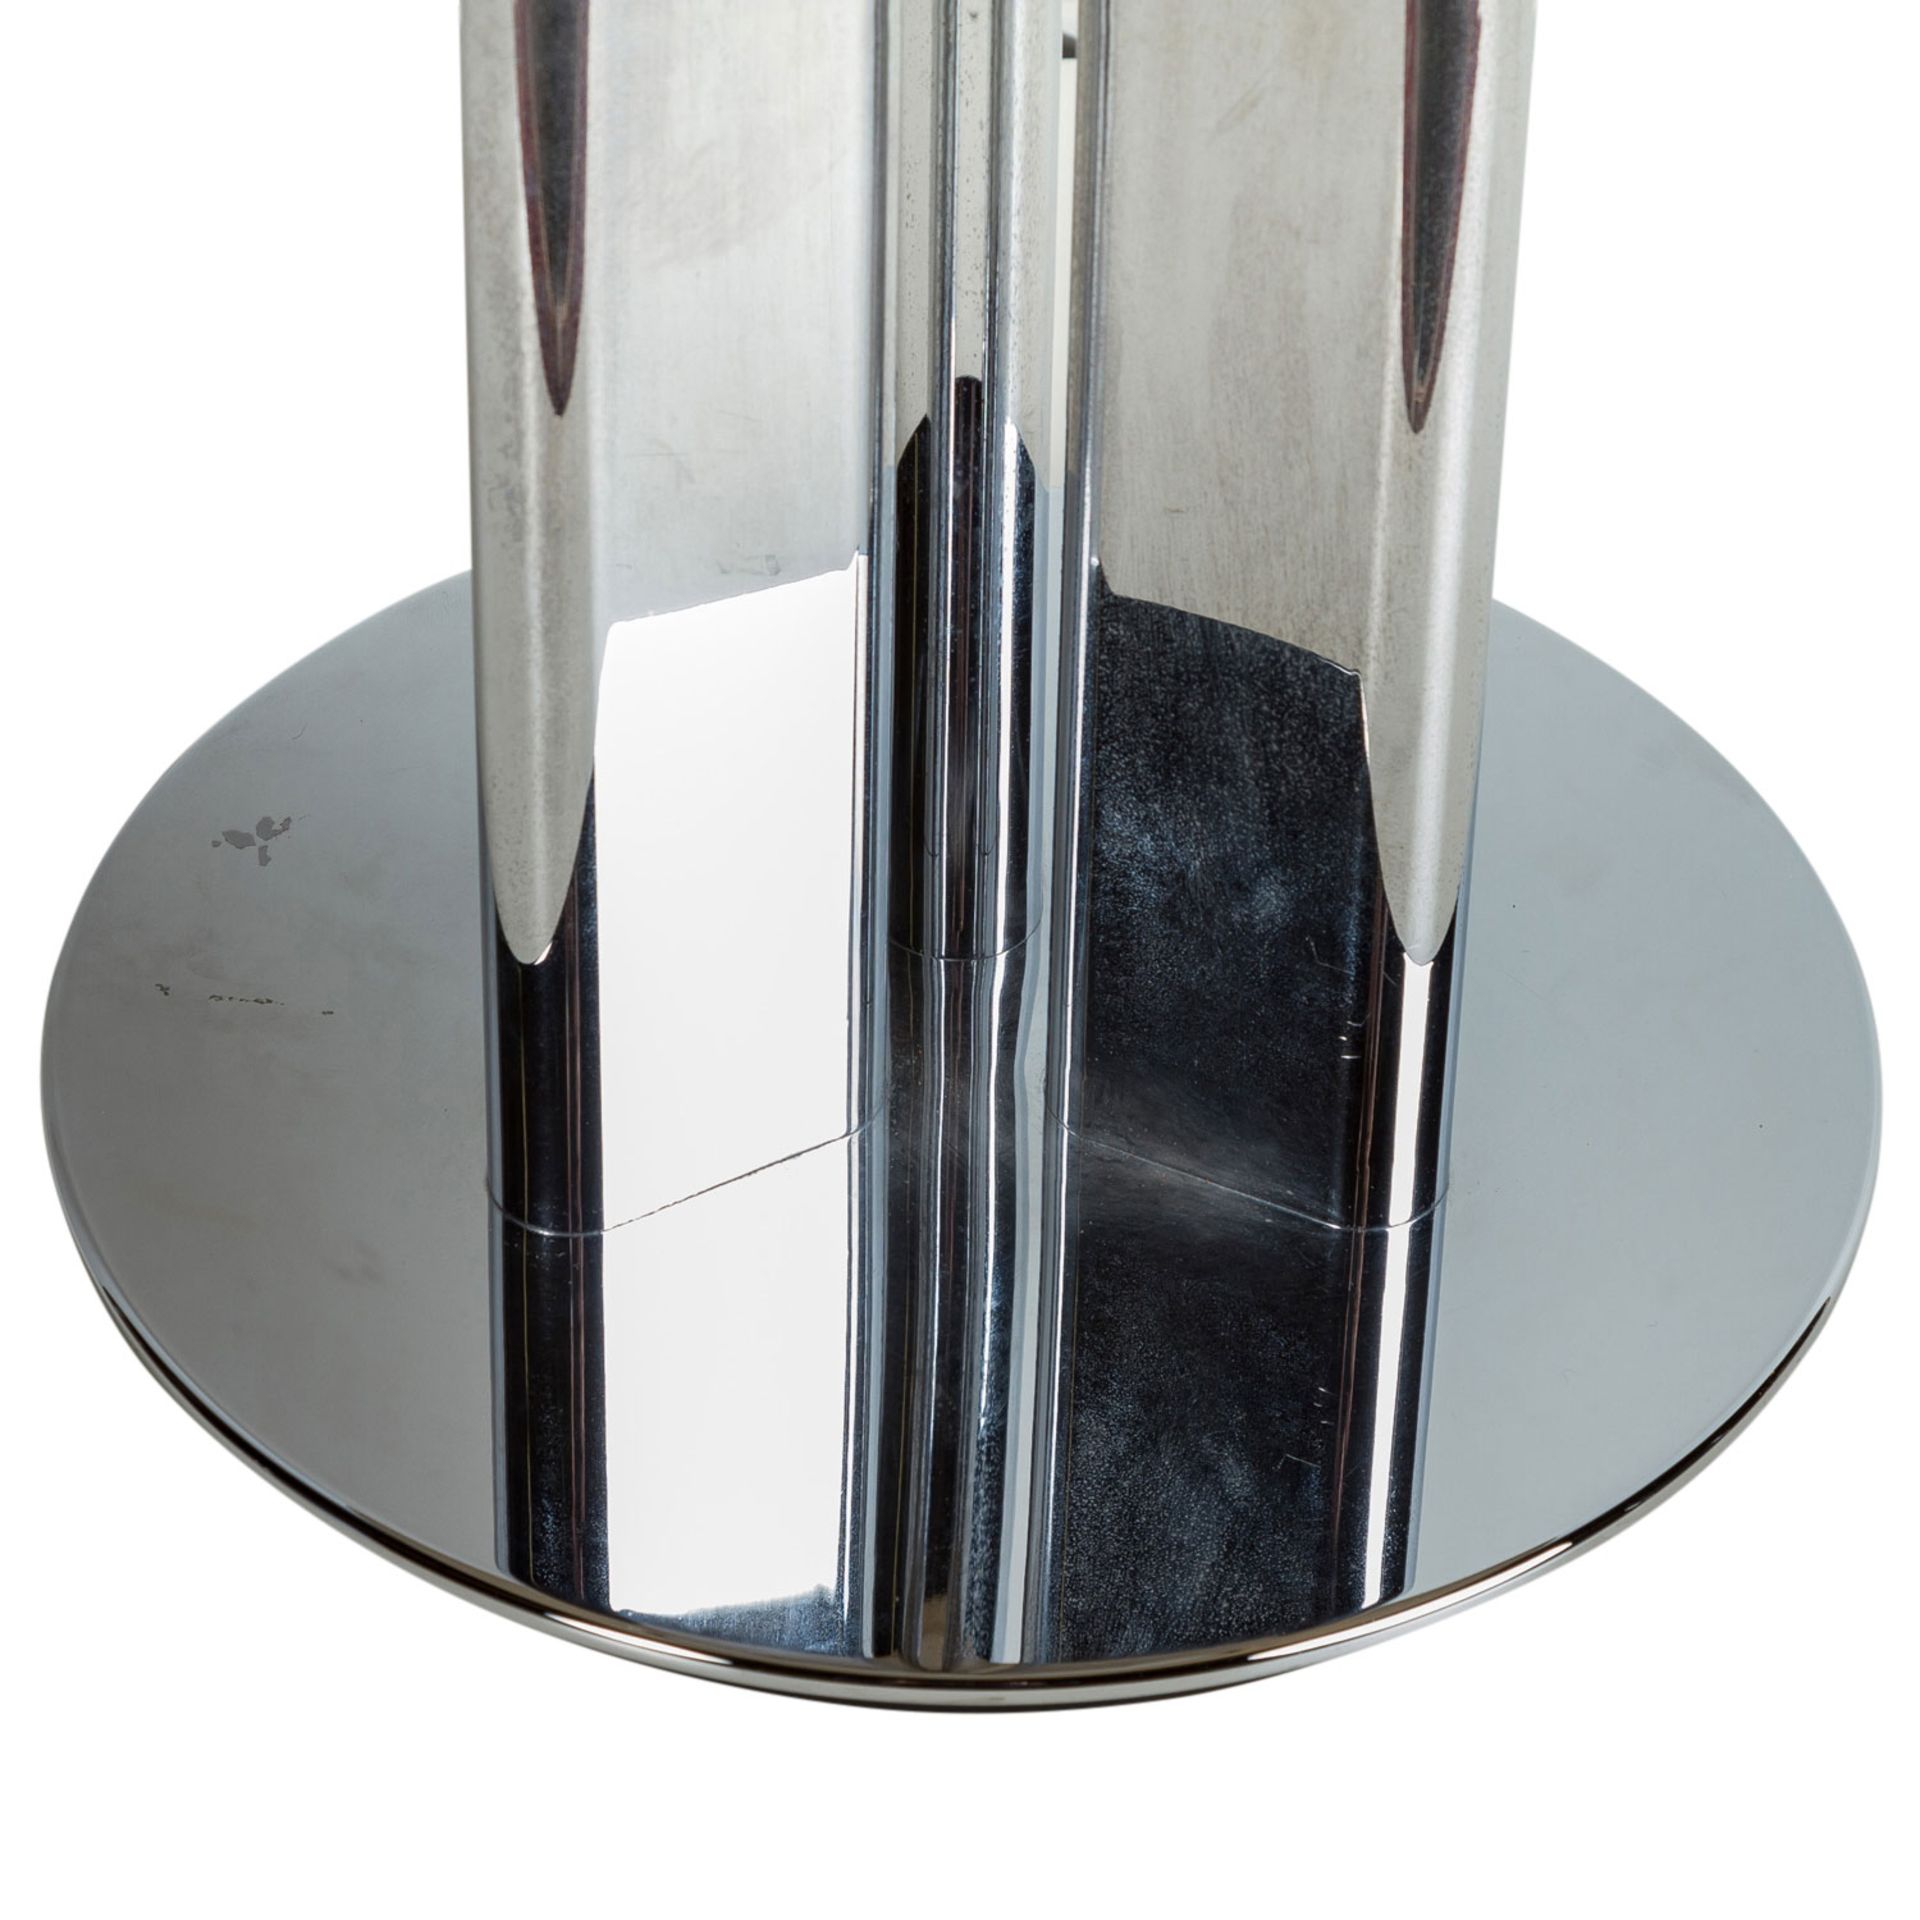 TISCHLAMPE1970er Jahre, 3 angeordnete Metallstreben bilden den Schaft, verchromt, Lamp - Bild 3 aus 3